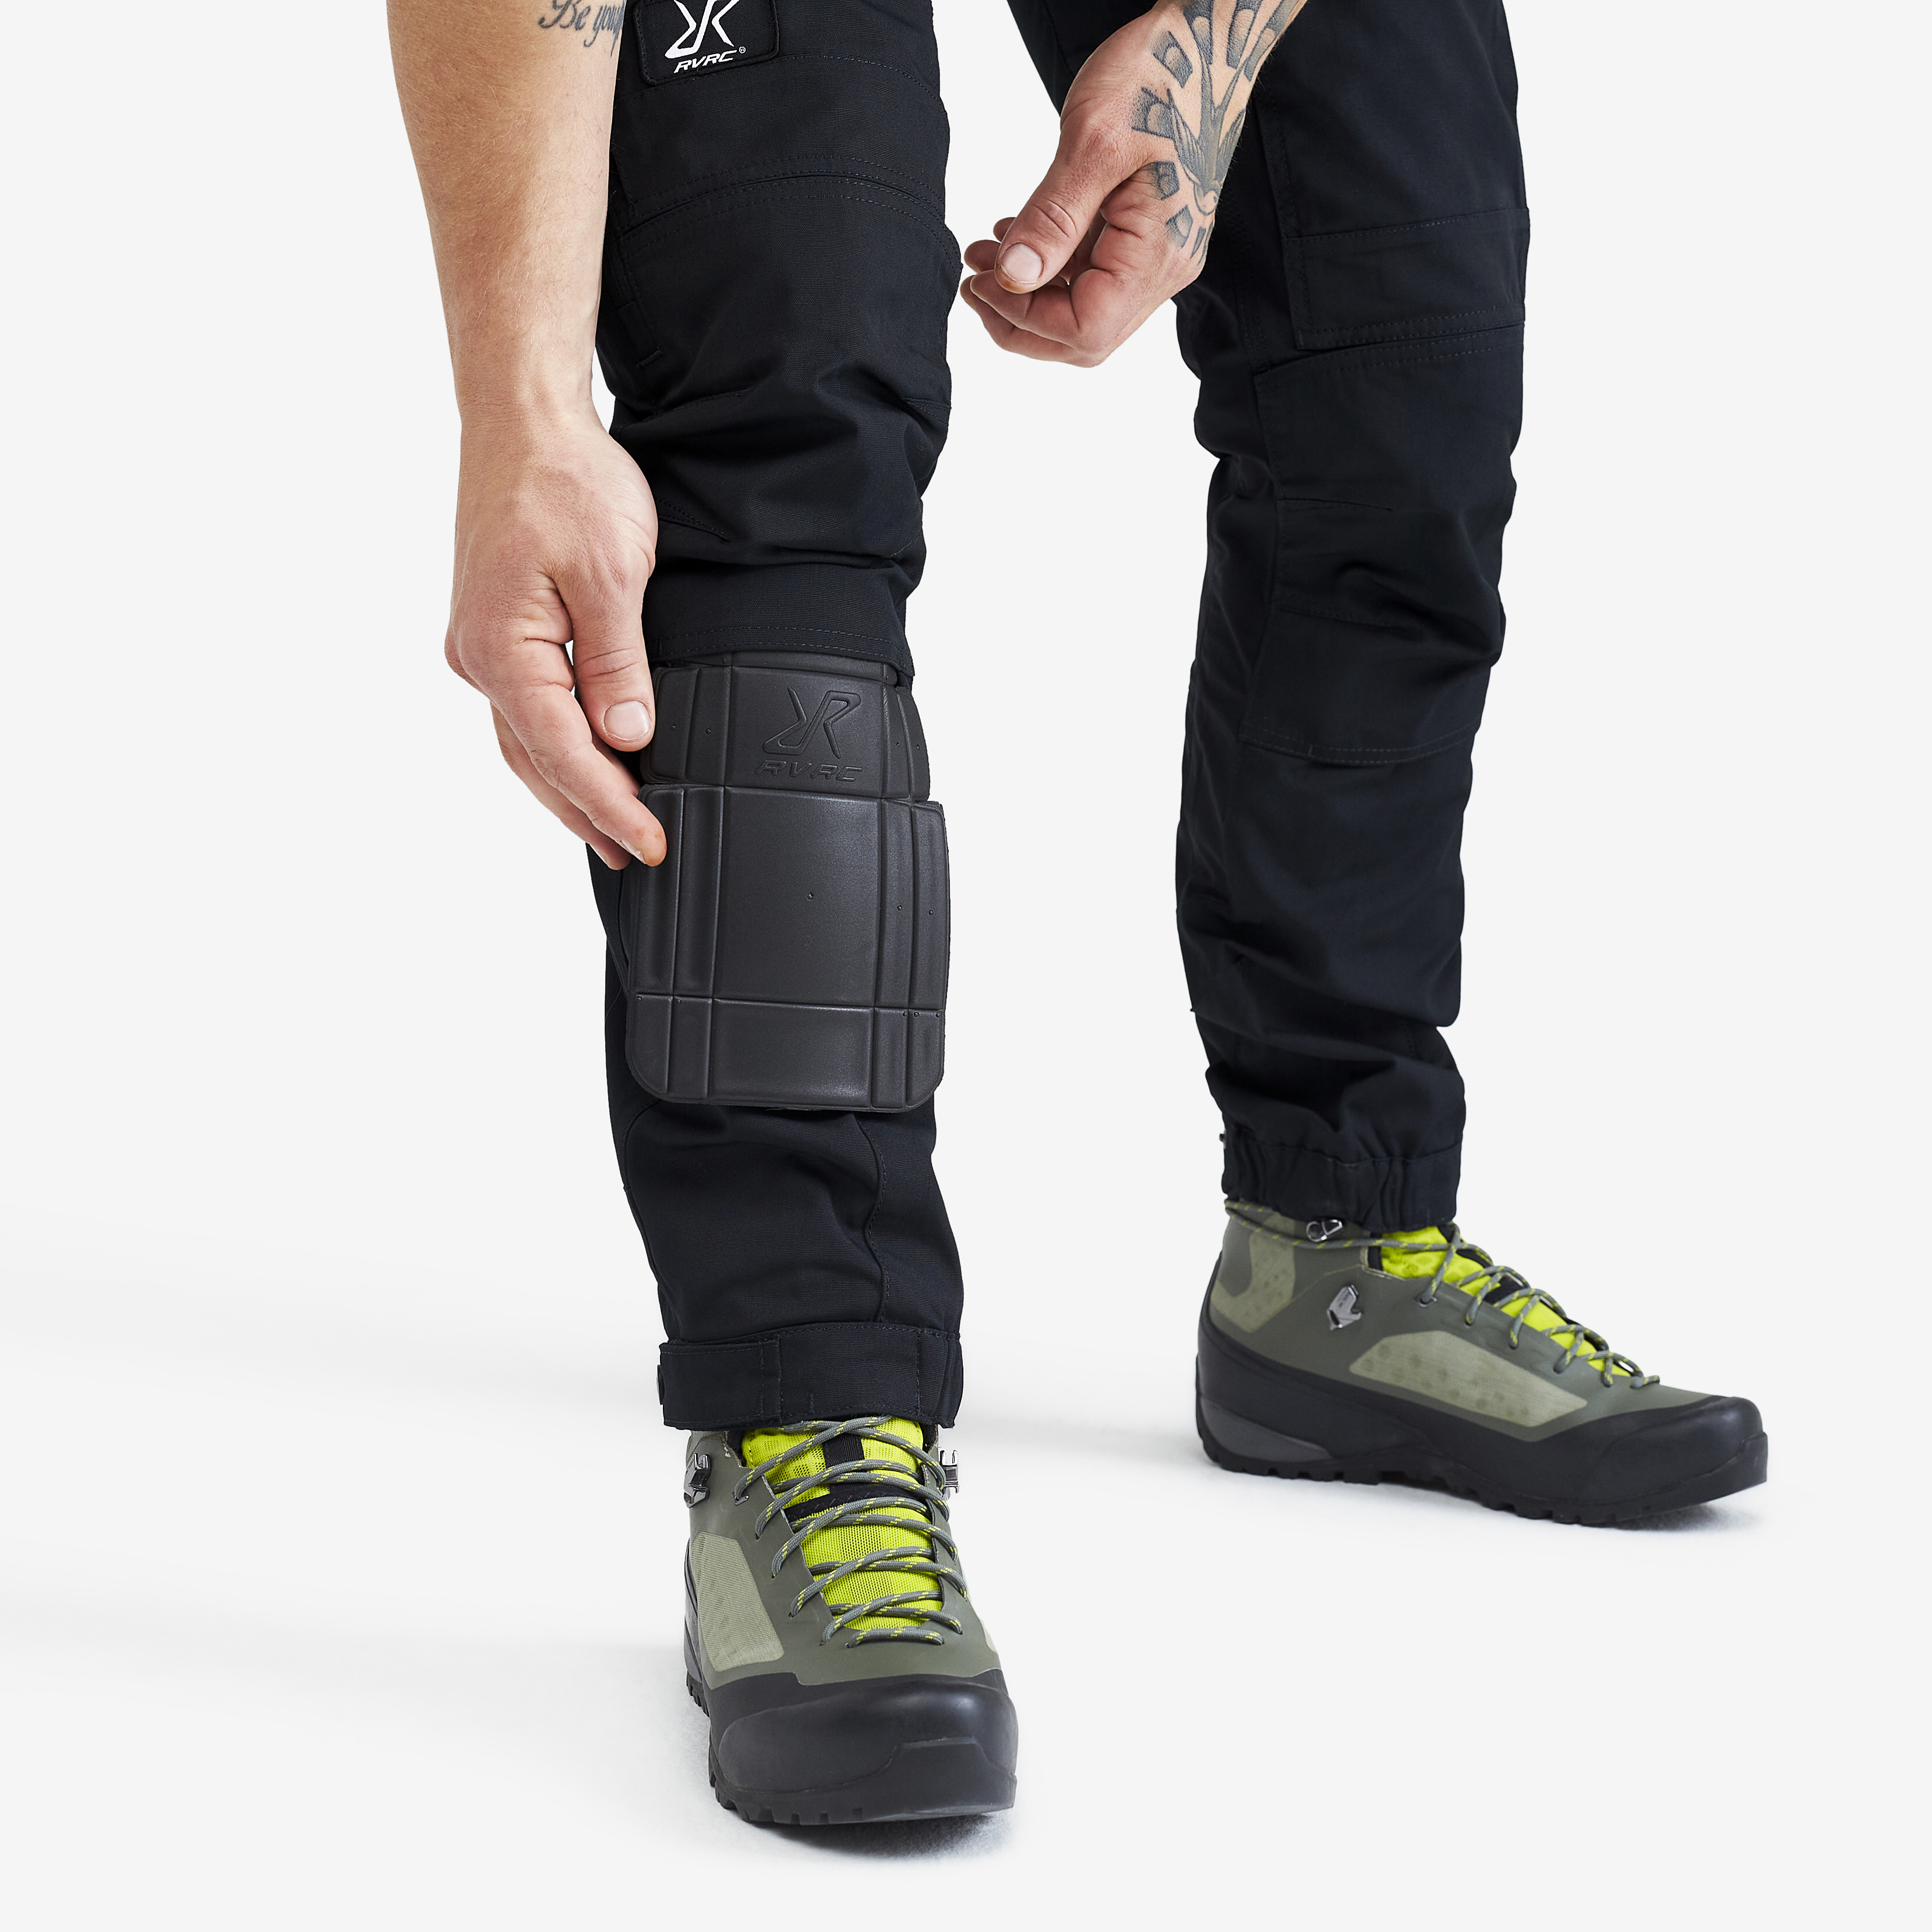 Pantalon Durable pour la randonnée et Autres activités de Plein air RevolutionRace Homme GPX Pro Pants